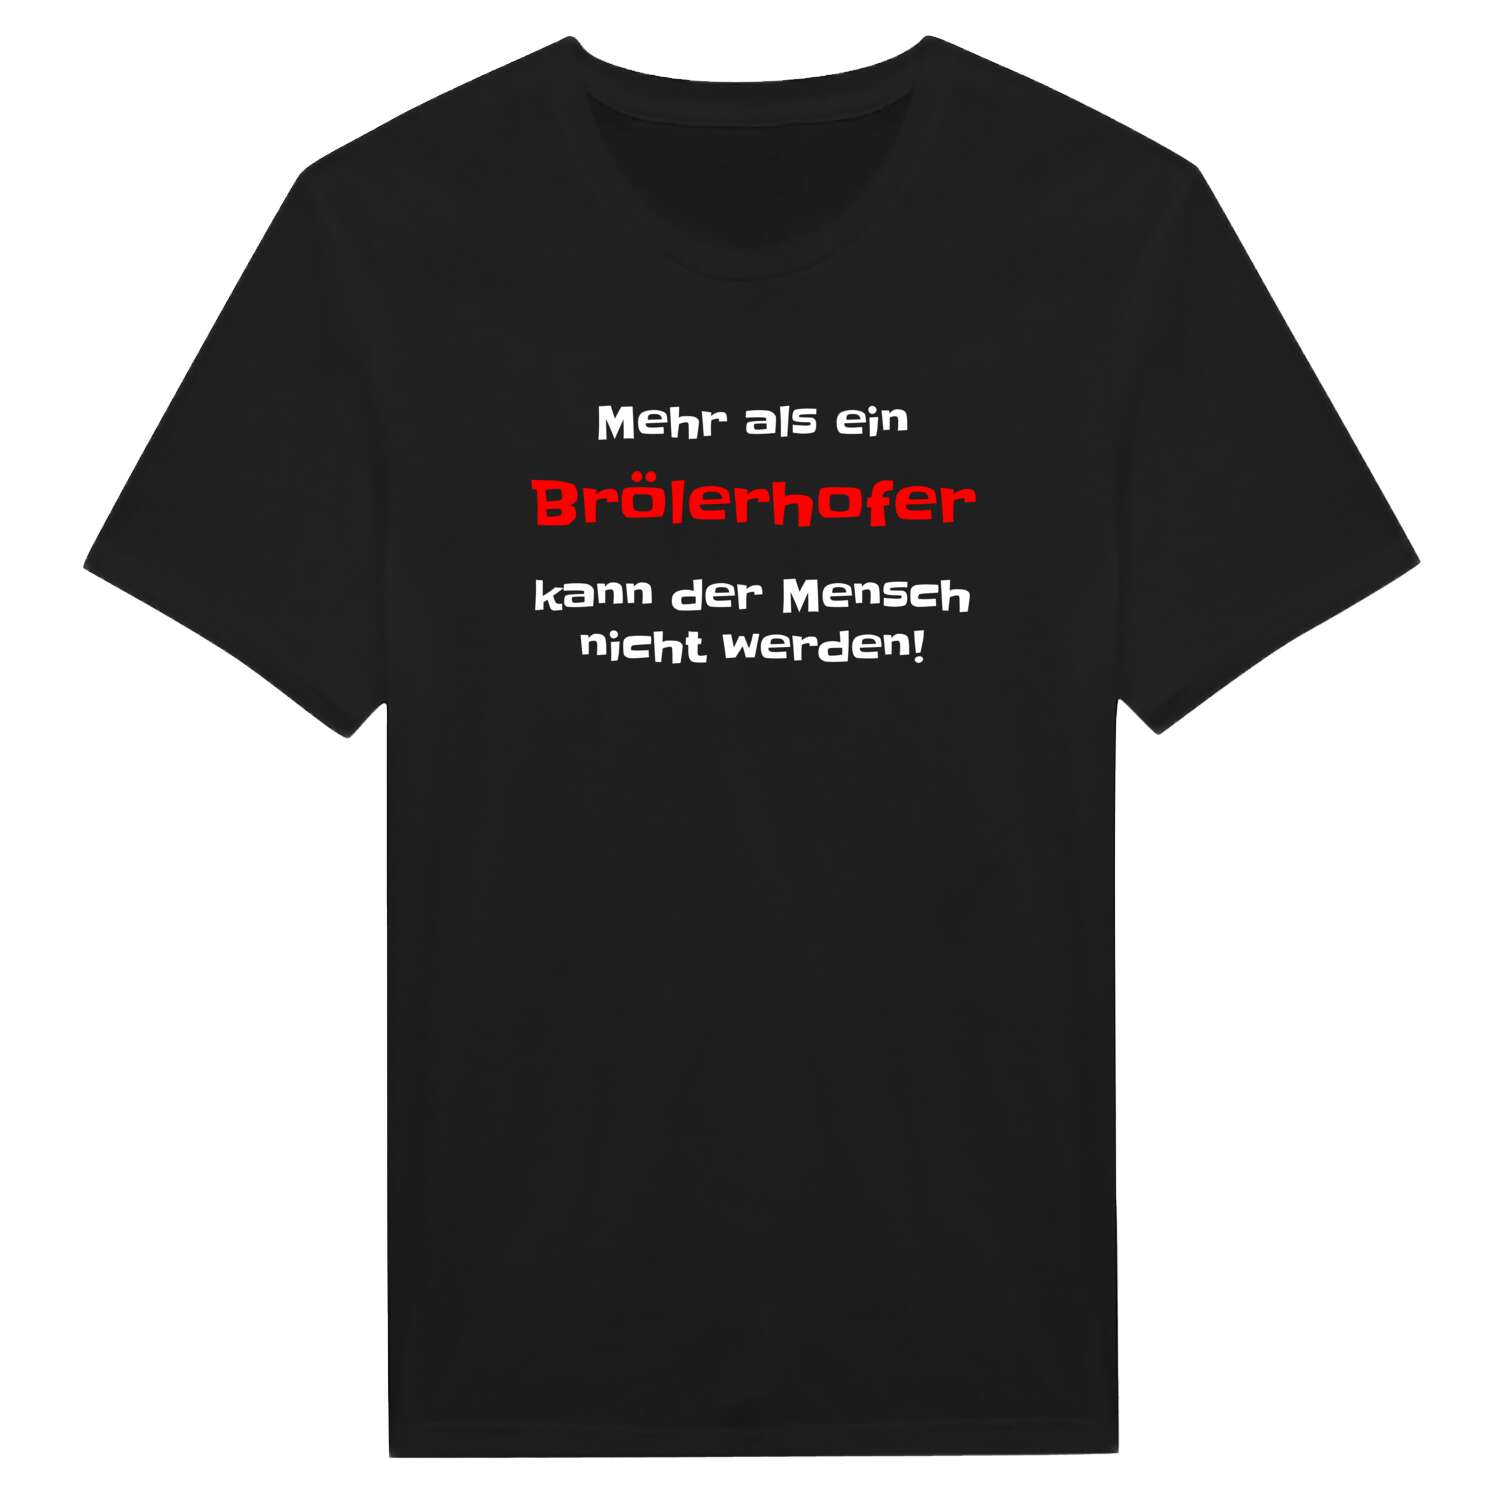 Brölerhof T-Shirt »Mehr als ein«